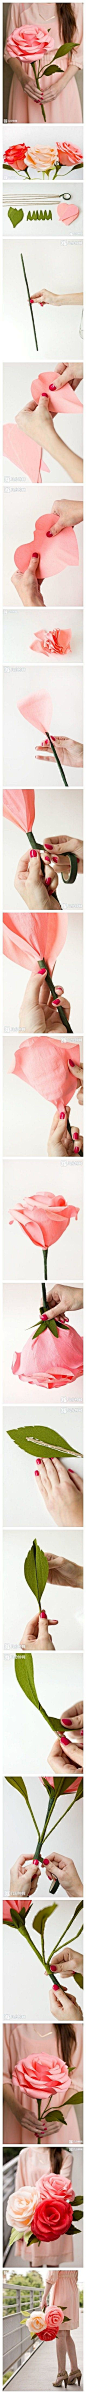 #堆教程#教你手工制作巨型纸玫瑰…_来自Gemini_ycl的图片分享-嘀咕 - 收集高清唯美图片，分享你所爱，结识心朋友